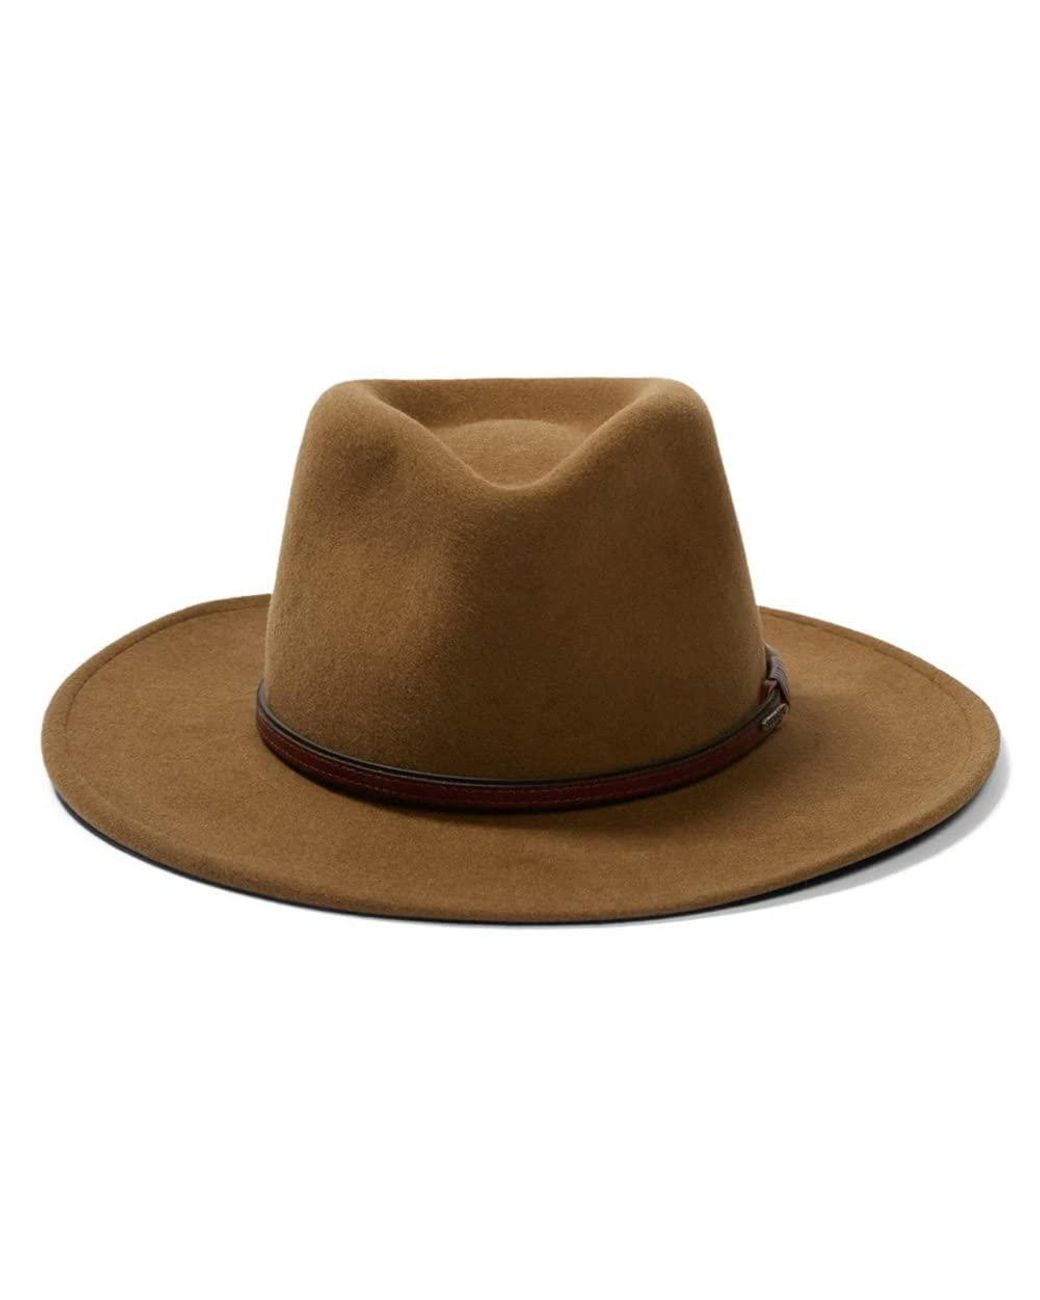 Bozeman Outdoor Hat